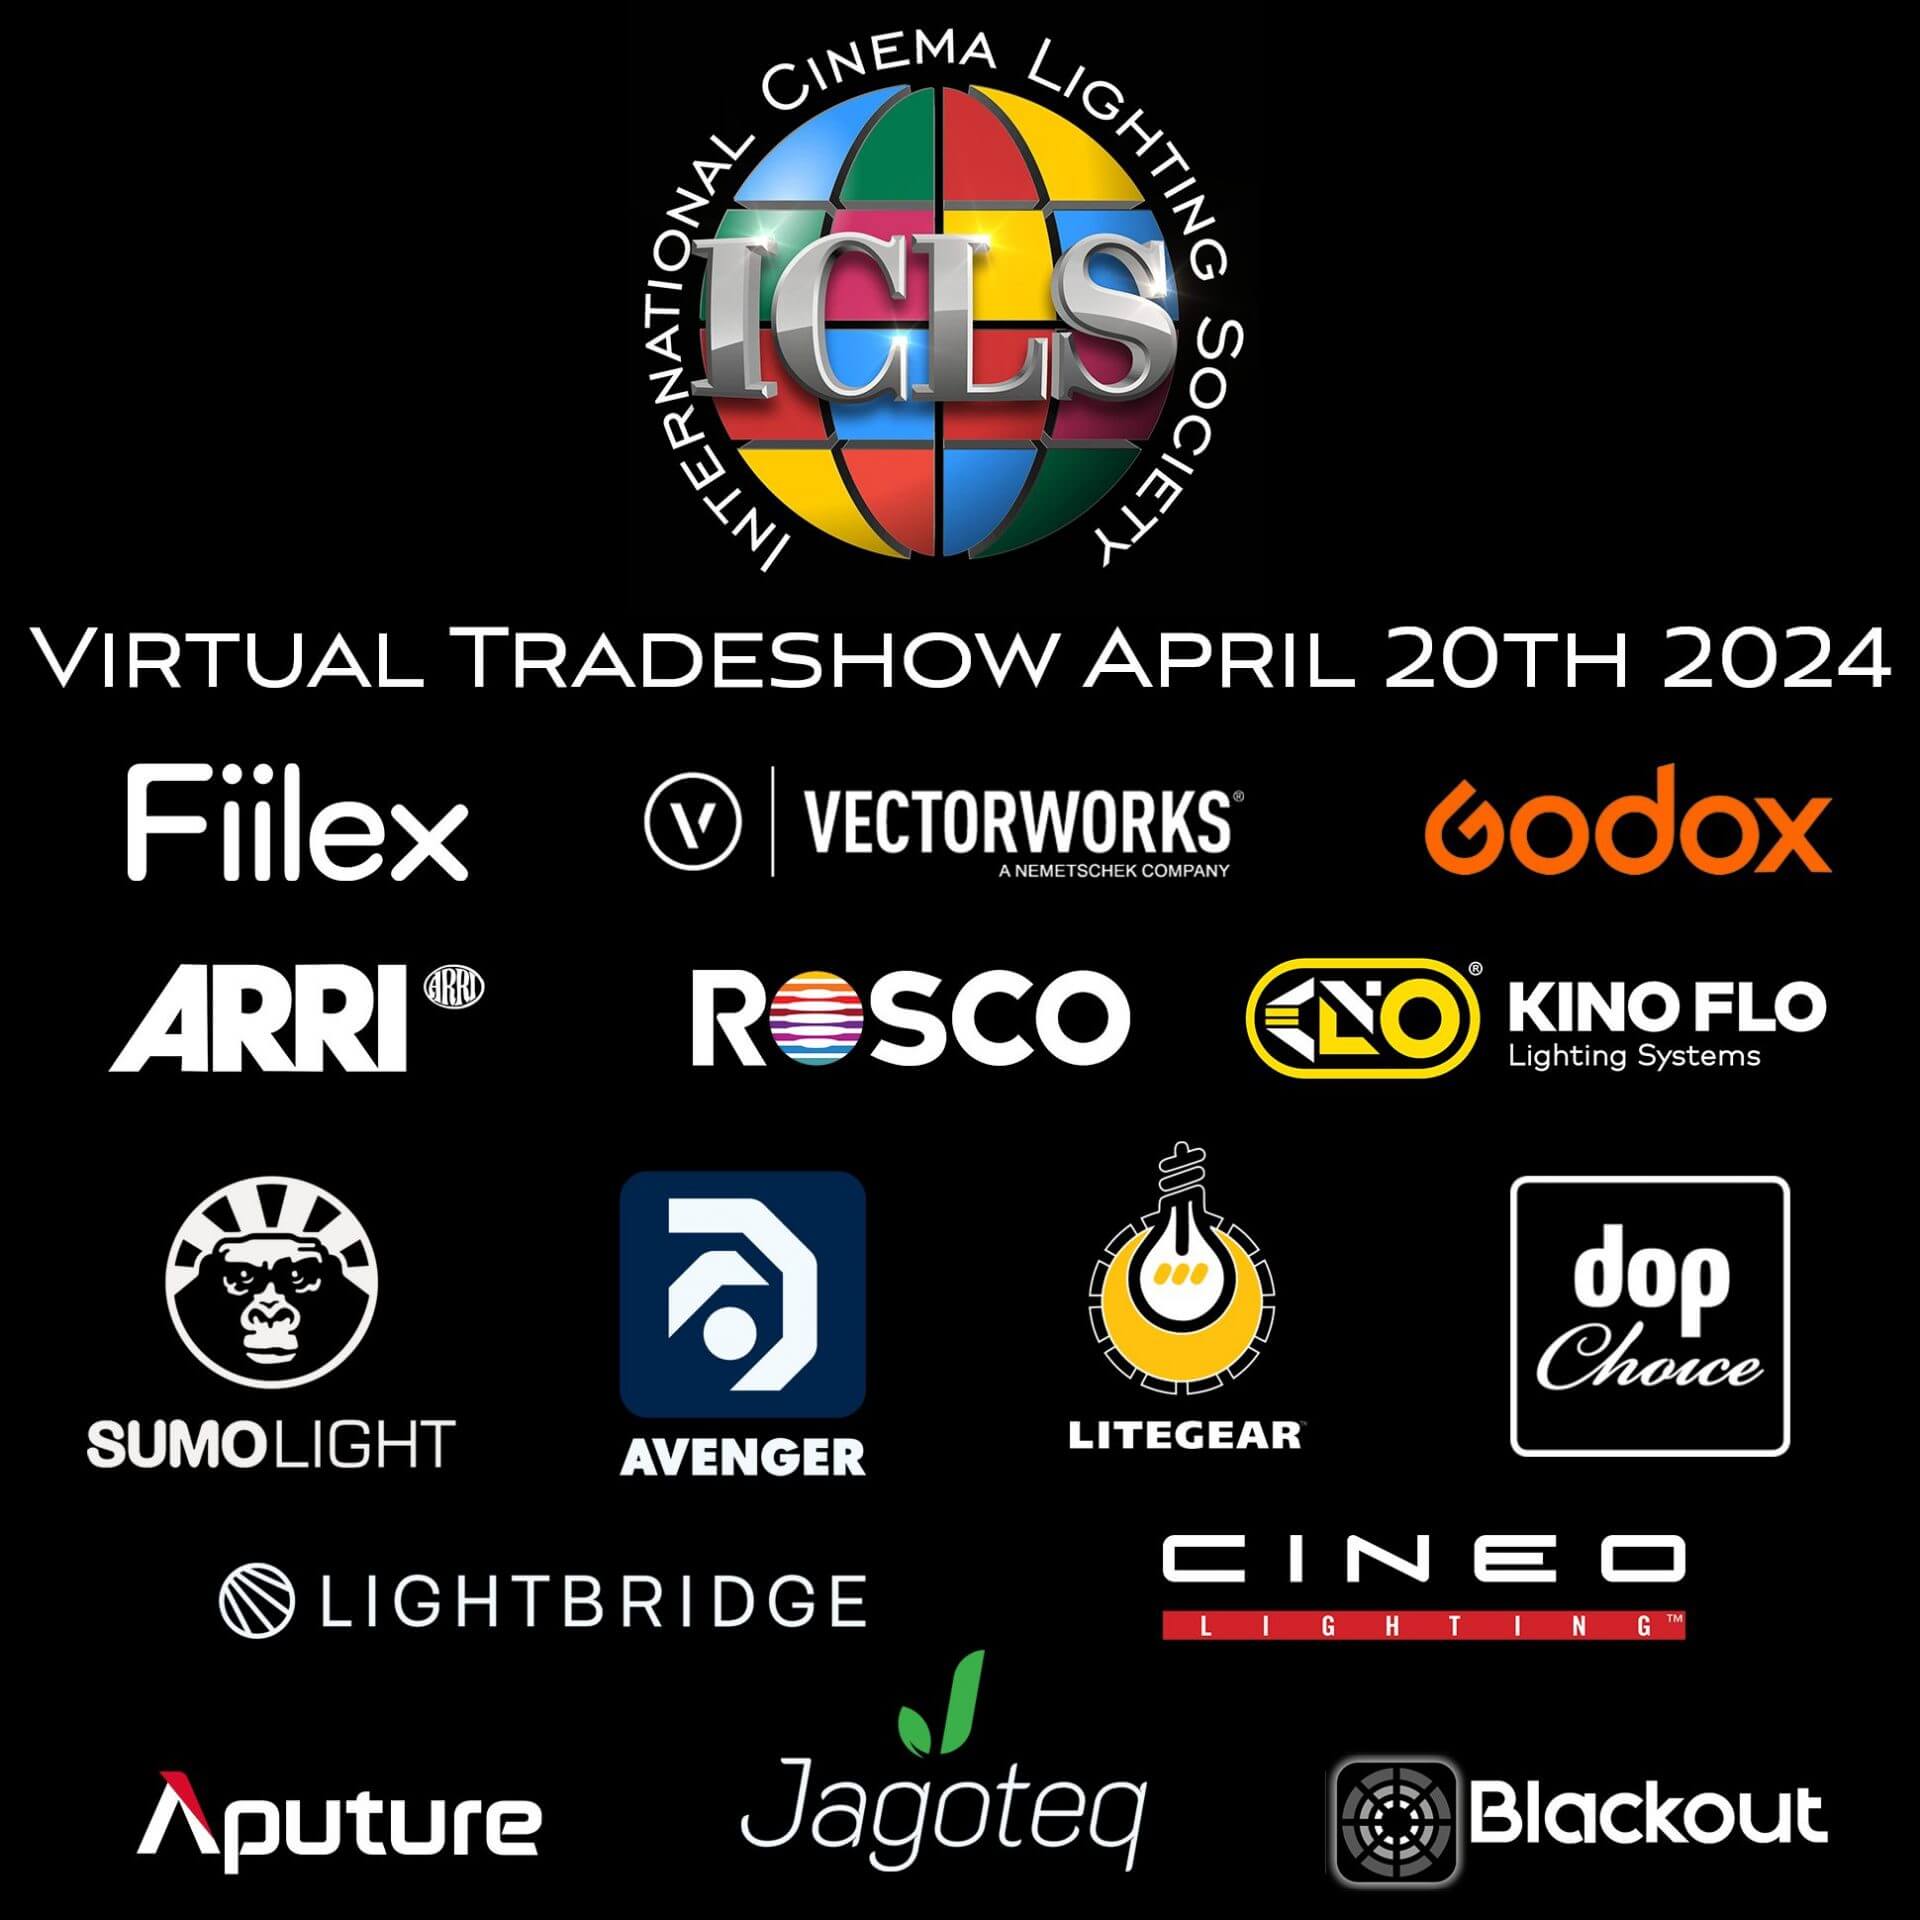 5th ICLS Virtual Tradeshow – GODOX